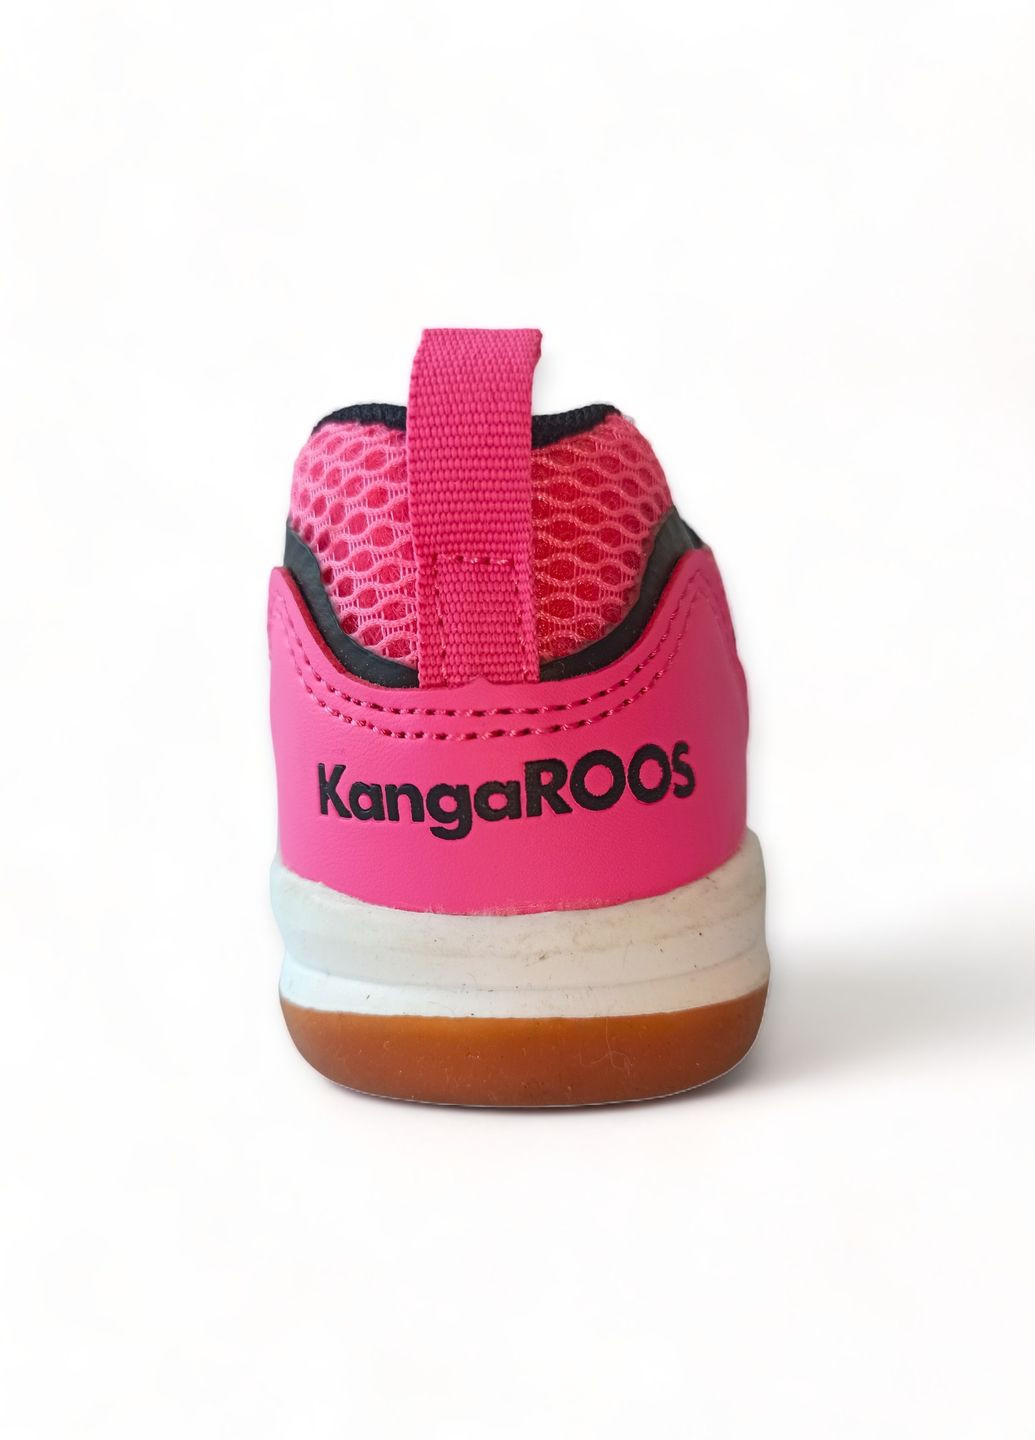 Рожеві всесезонні кросівки дитячі для дівчинки 18332/6122 рожеві футзал (32) Kangaroos